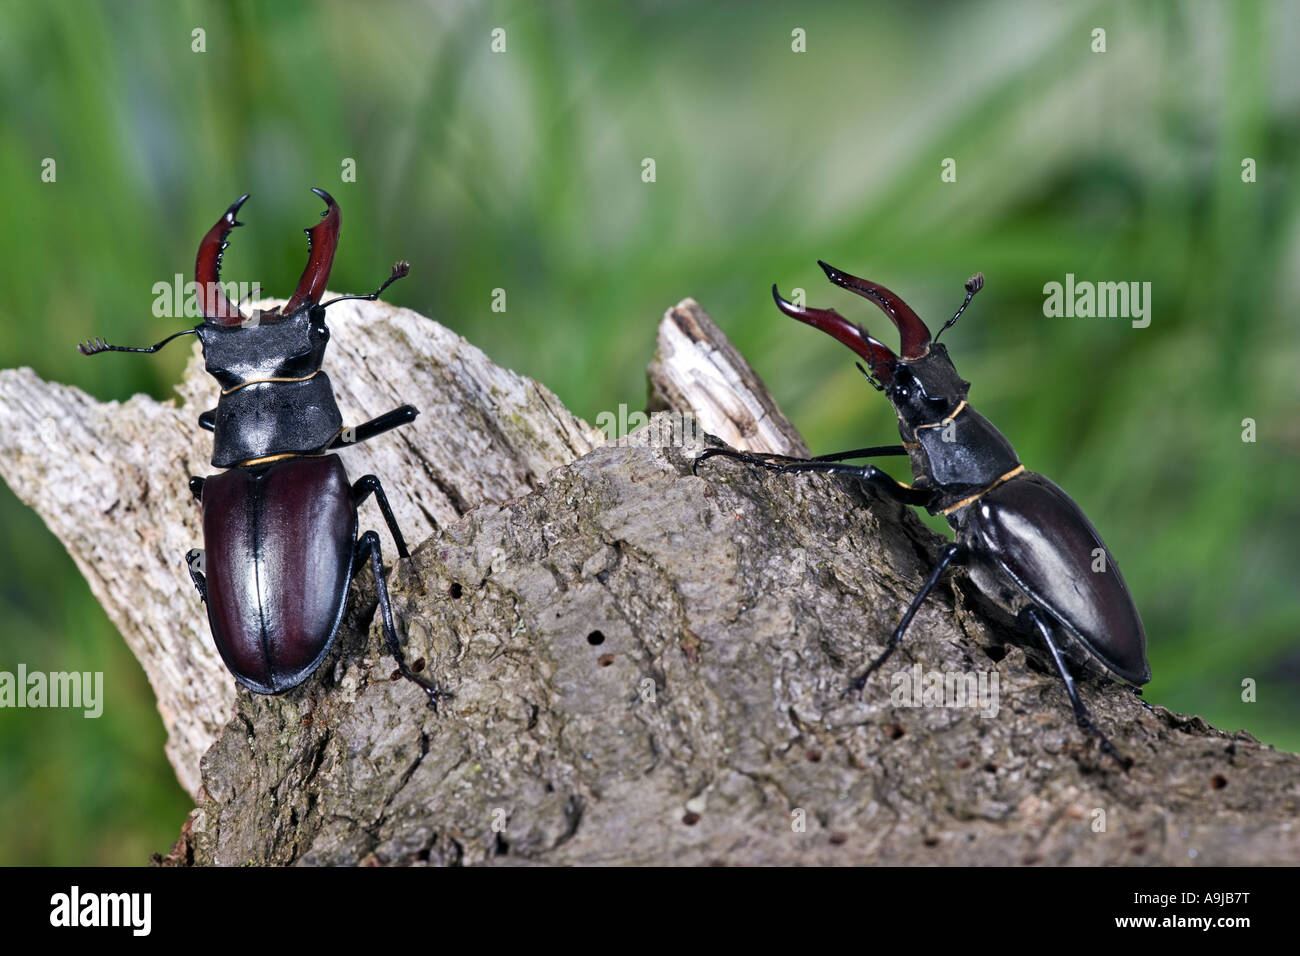 Mâles de la stag beetles Lucanus cervus on log Banque D'Images